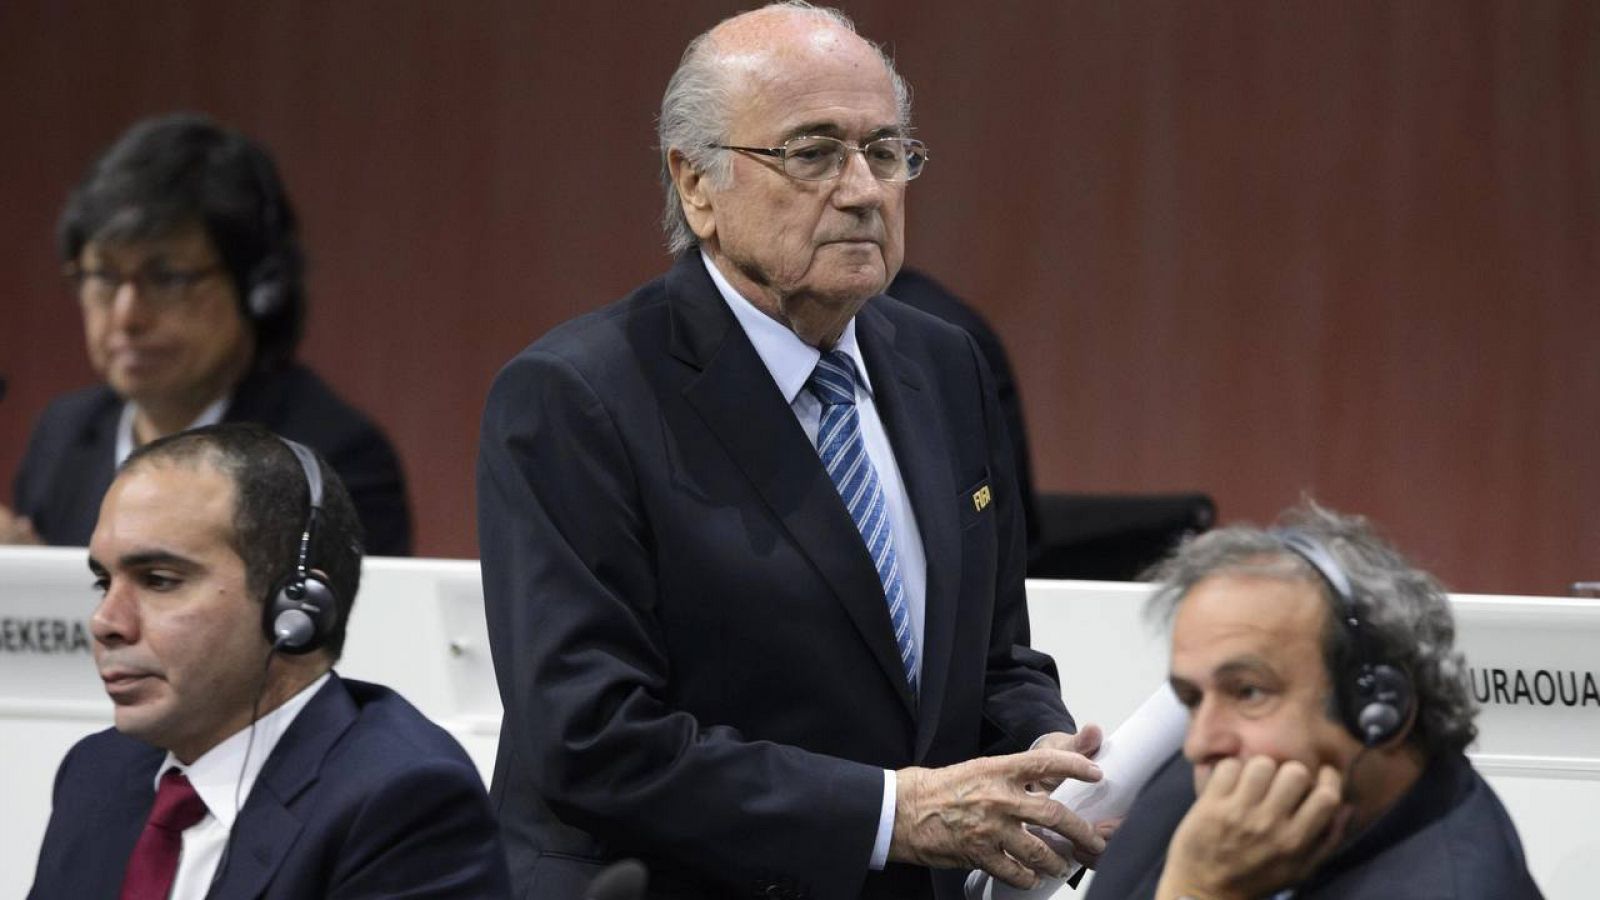 El presidente de la FIFA, Joseph Blatter, anunció medidas internas contra el escándalo de corrupción